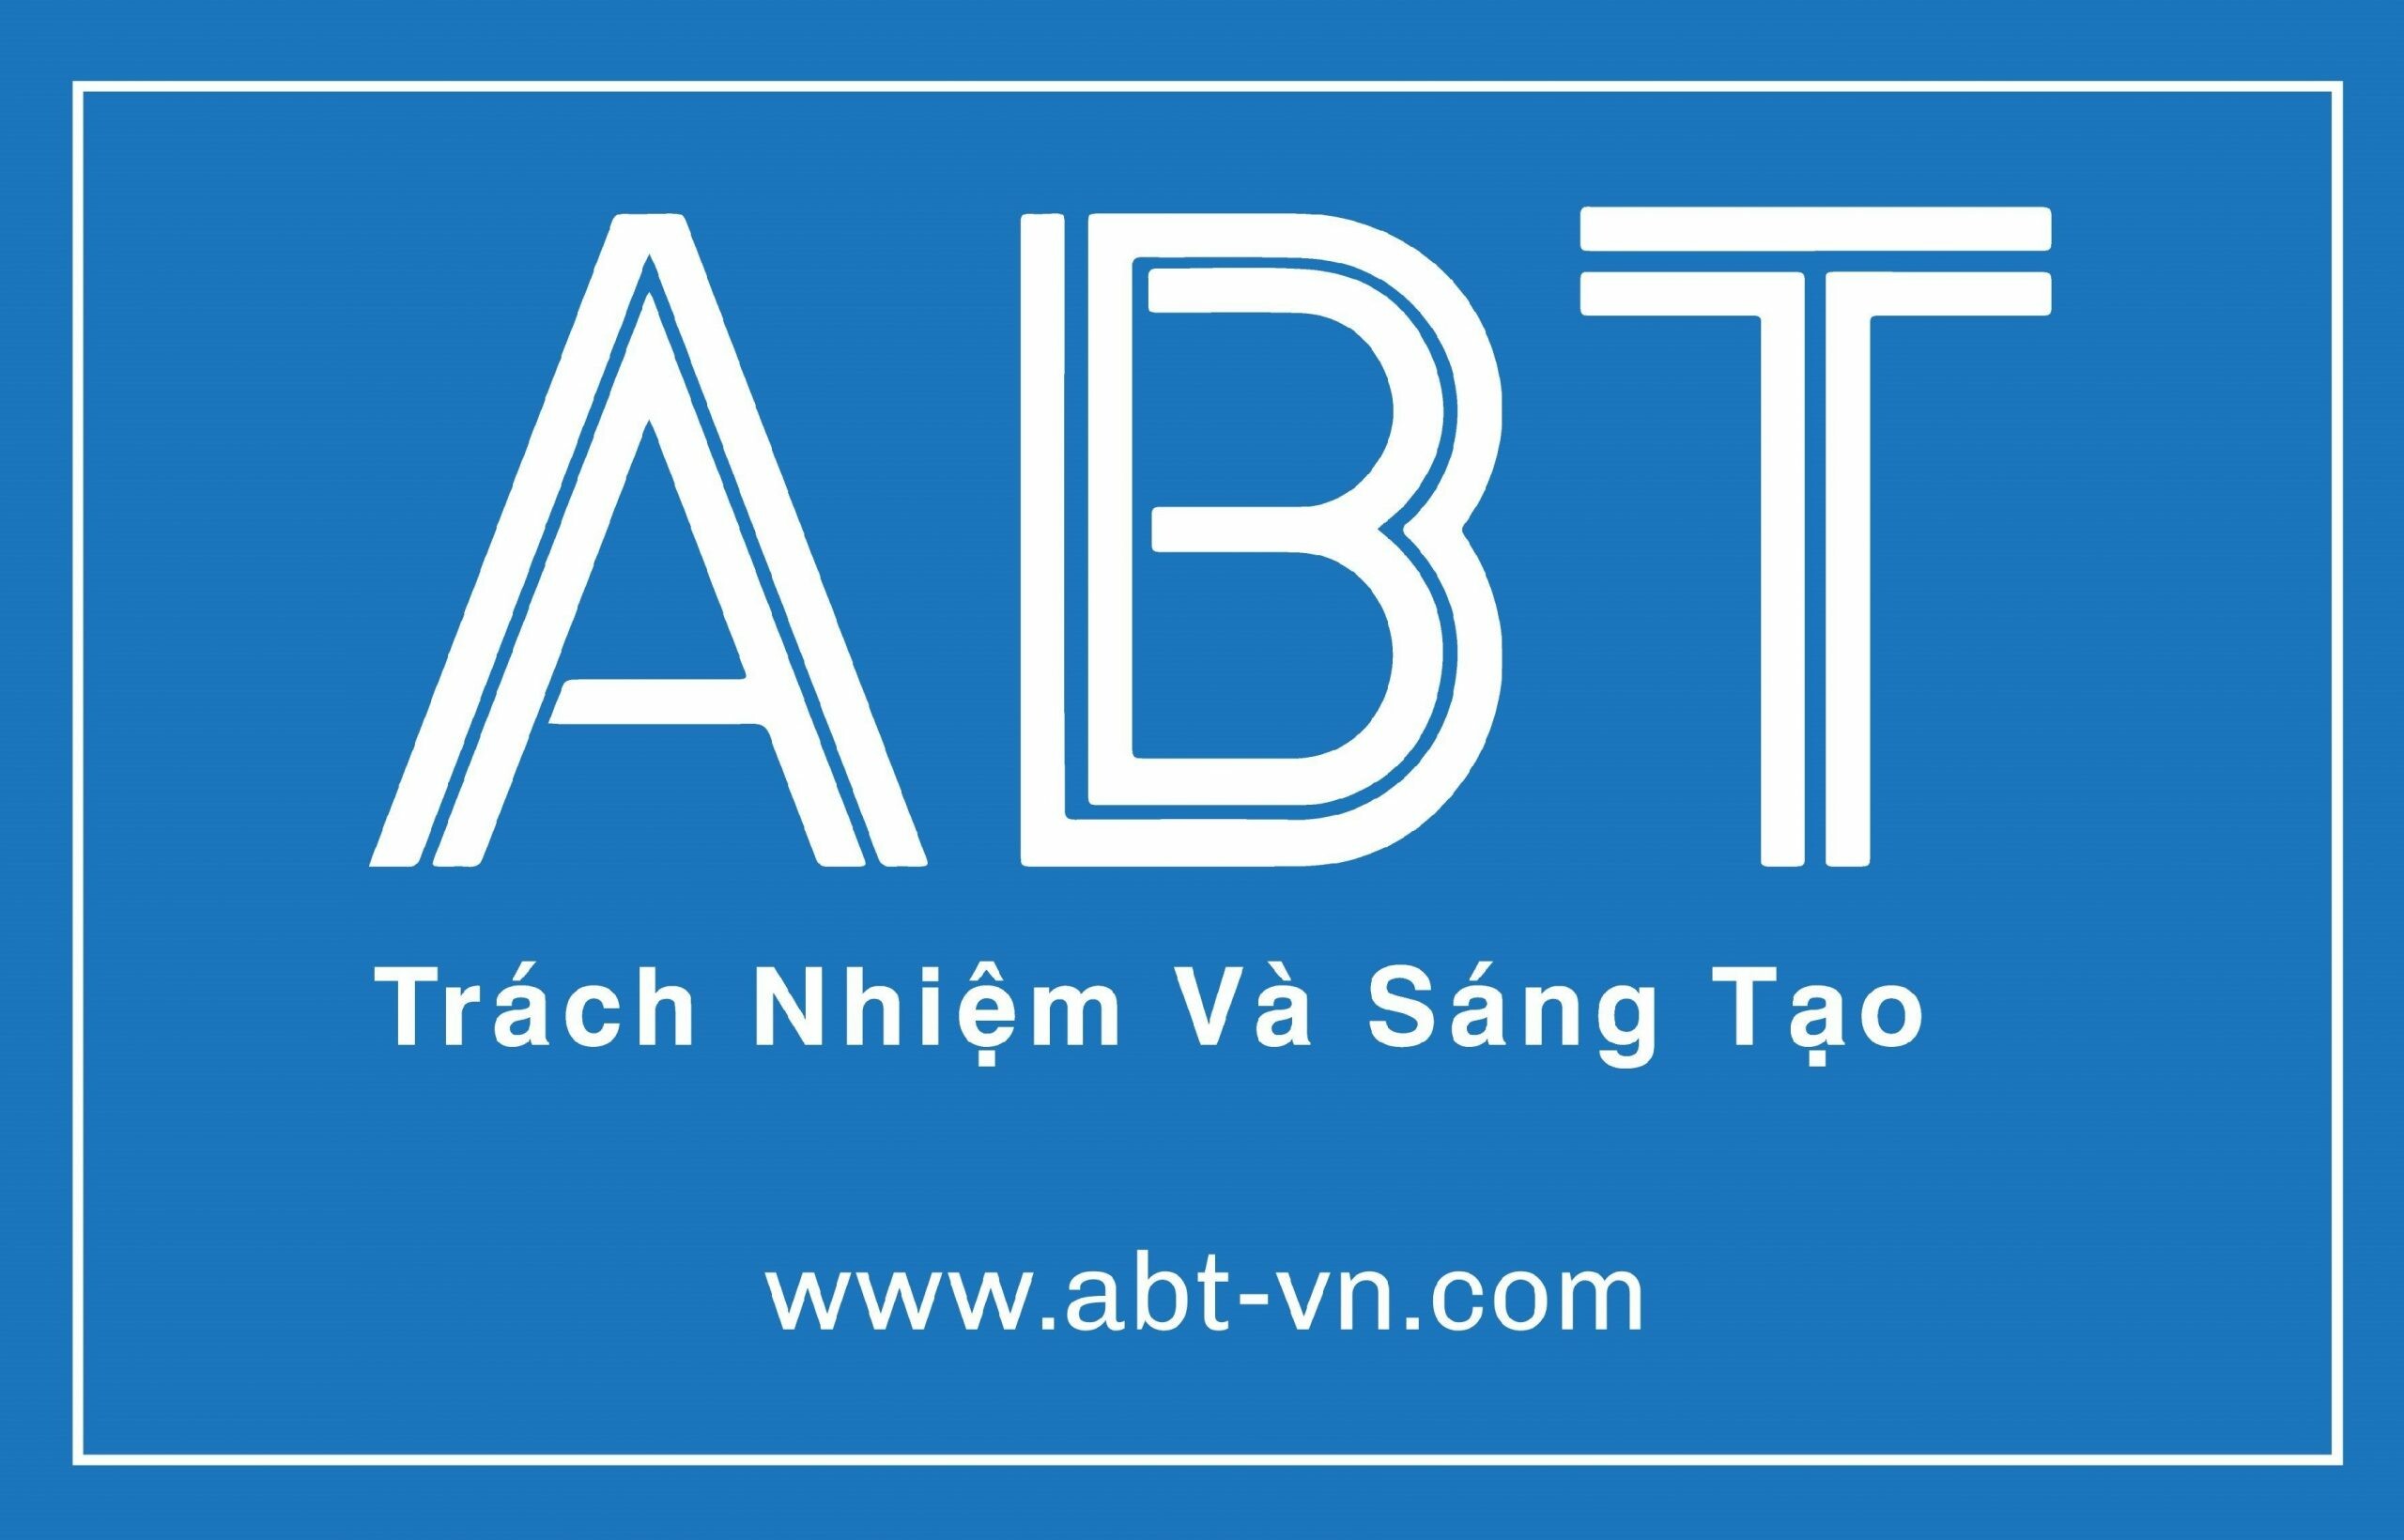 Công ty TNHH Thiết bị ABT